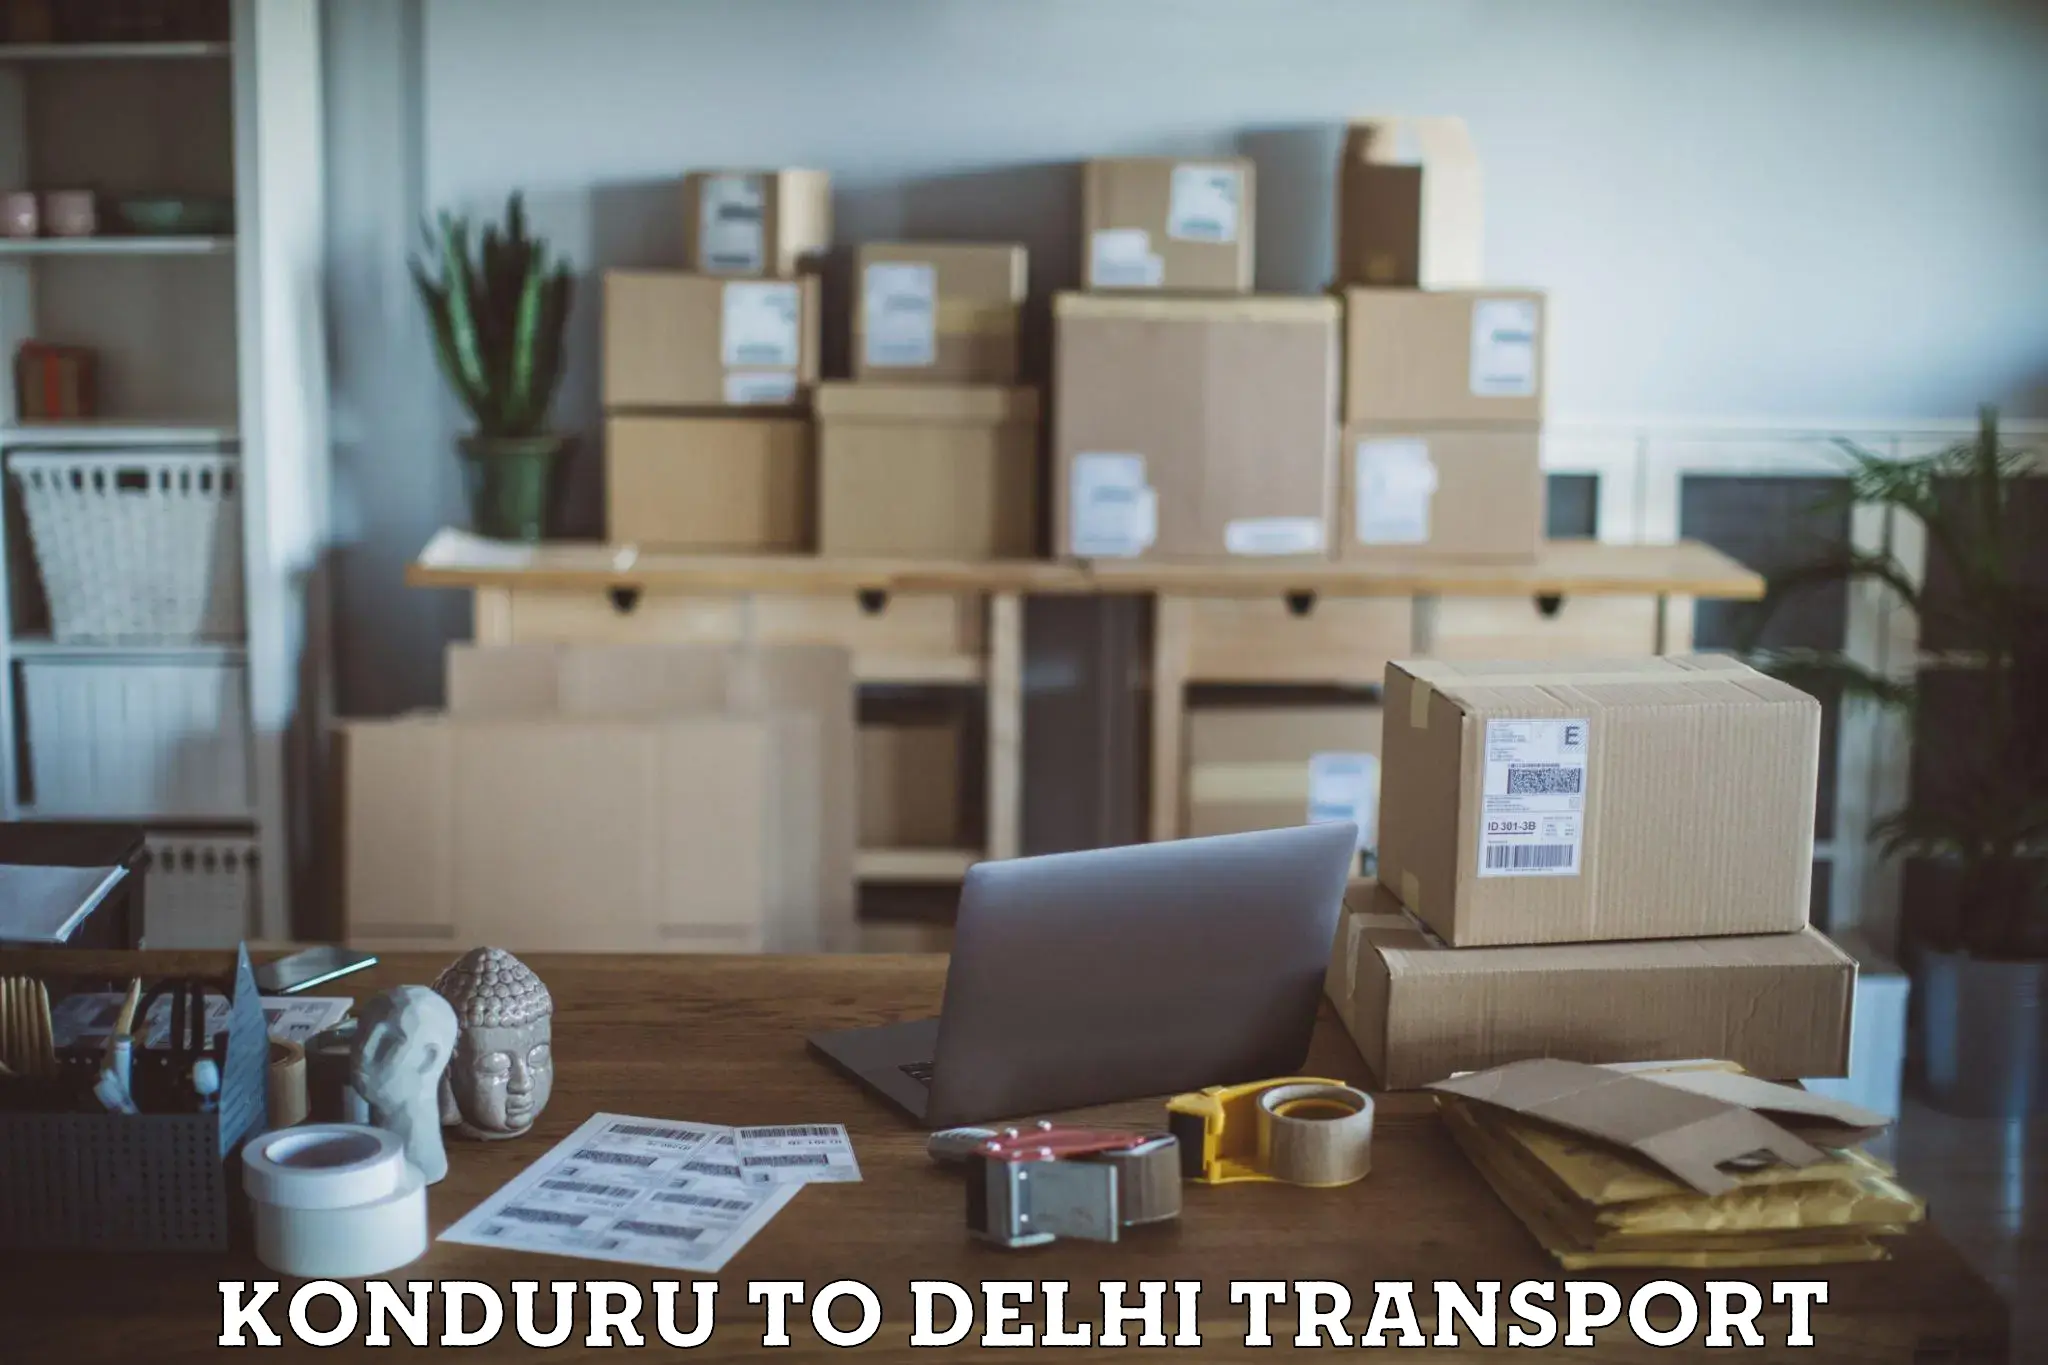 Shipping services Konduru to Delhi